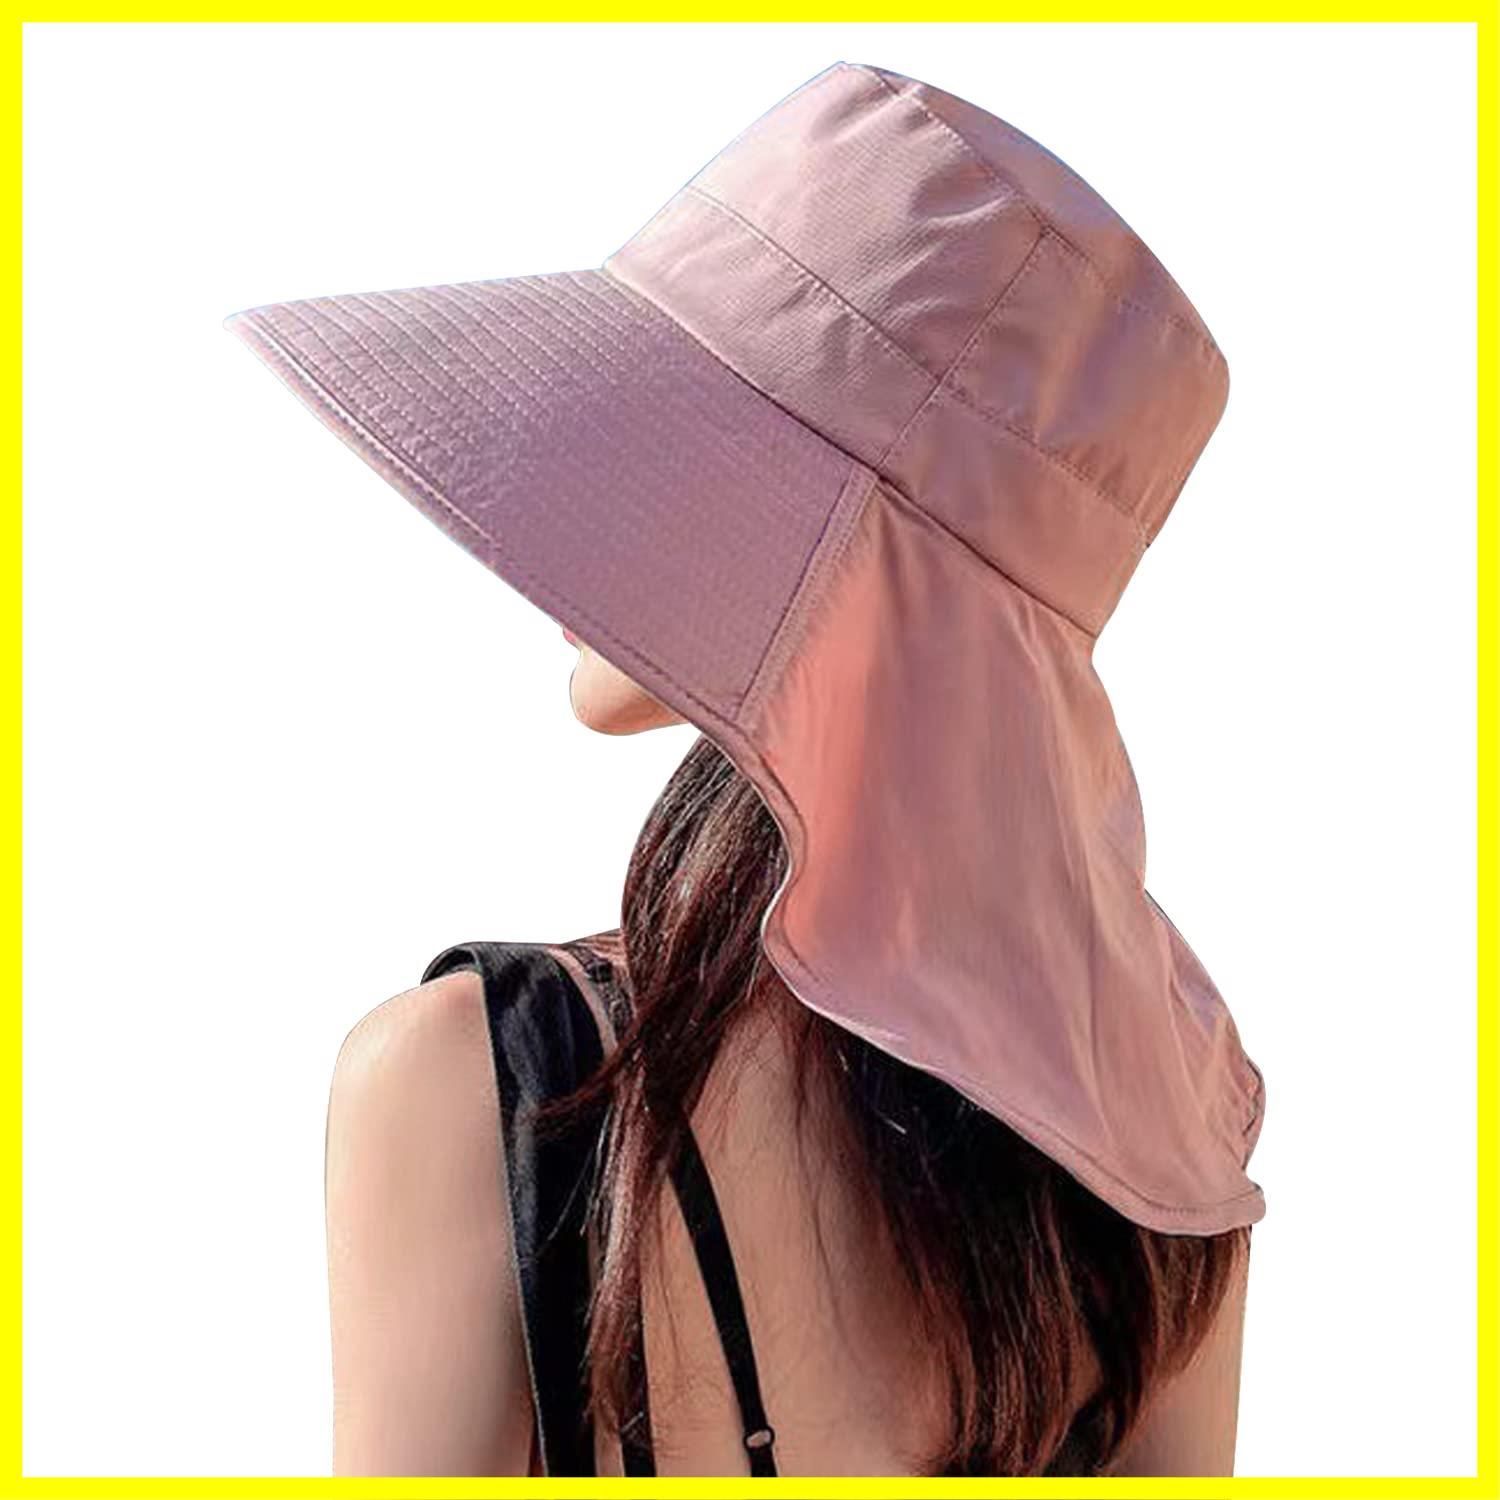 【色: イエロー】ARSZHORSVS UVカット 帽子 レディース 日焼け対策